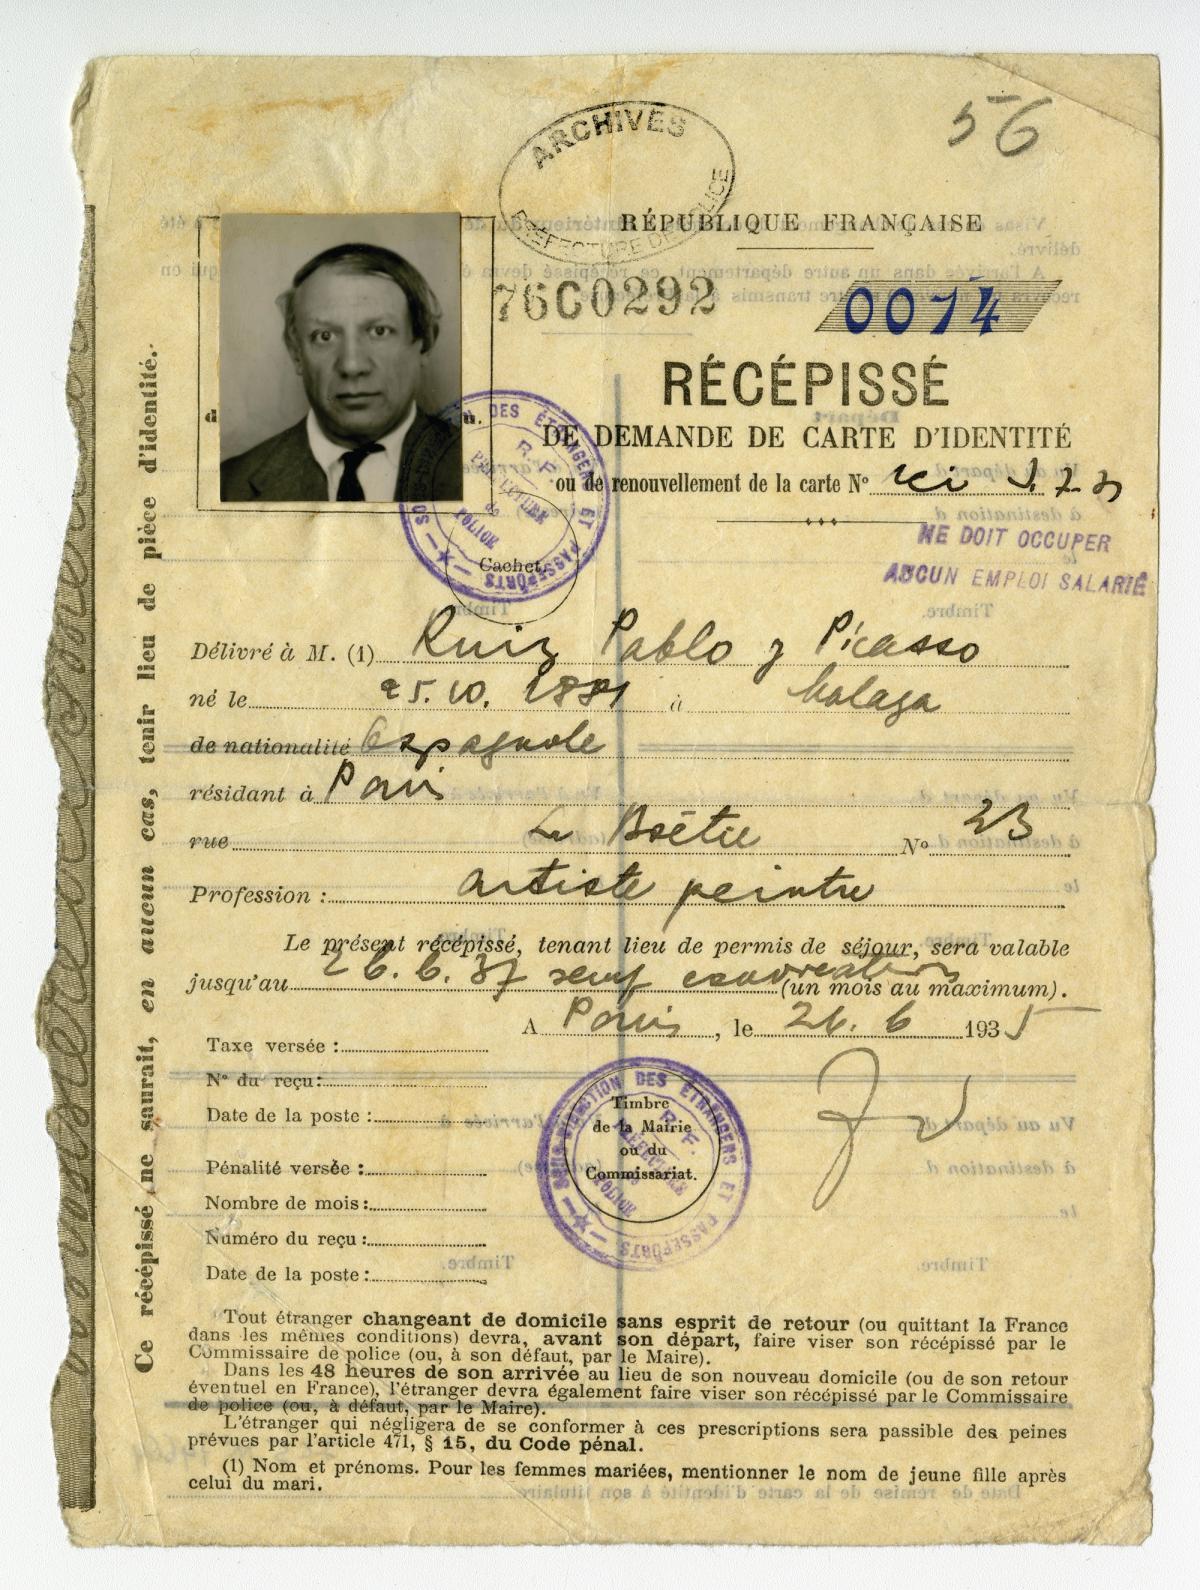 The official receipt for Picasso’s request for a foreigner’s identity card in Paris in 1935 Courtesy archives de la Préfecture de Police de Paris